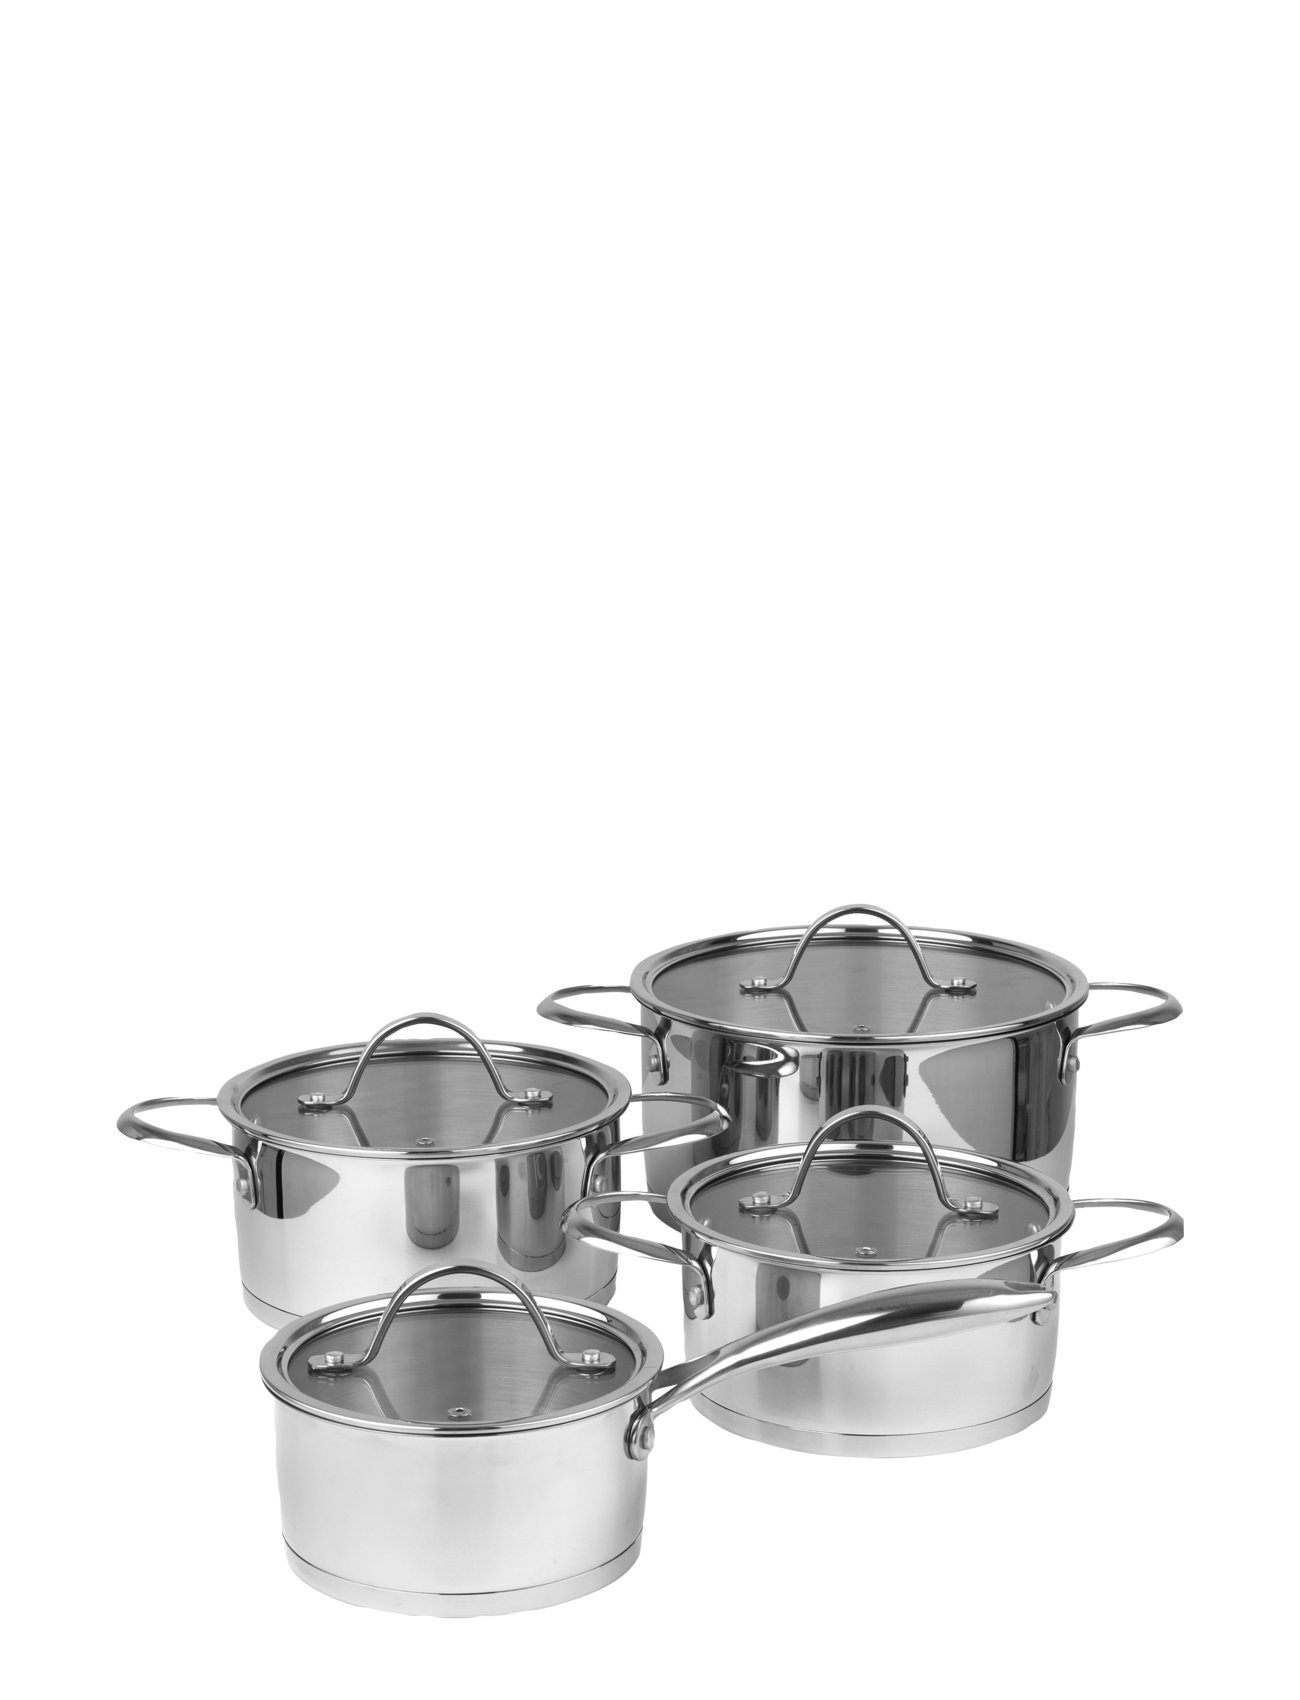 Grydesæt Med Glaslåg Mosel Home Kitchen Pots & Pans Saucepan Sets Silver Pillivuyt Gourmet